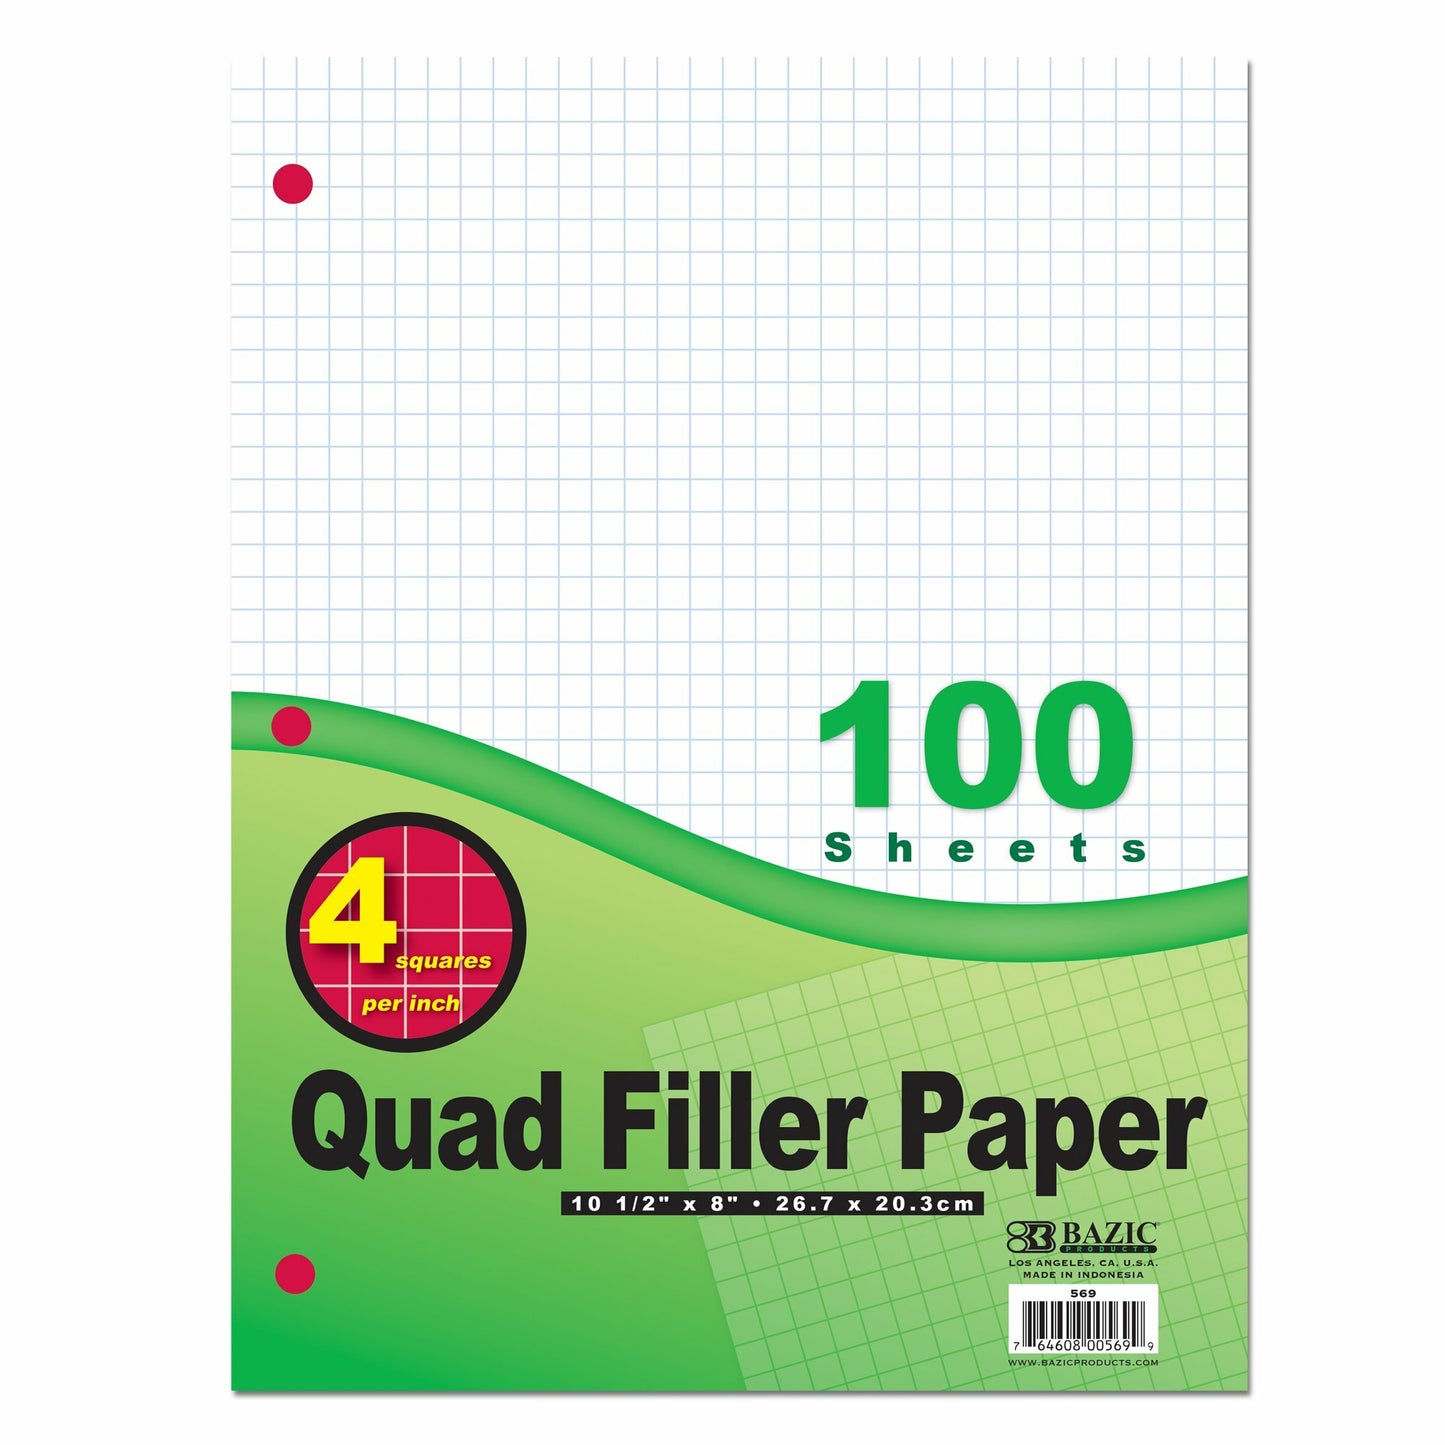 Quad Filler Paper 7mm, 100 Sheets / Bazic